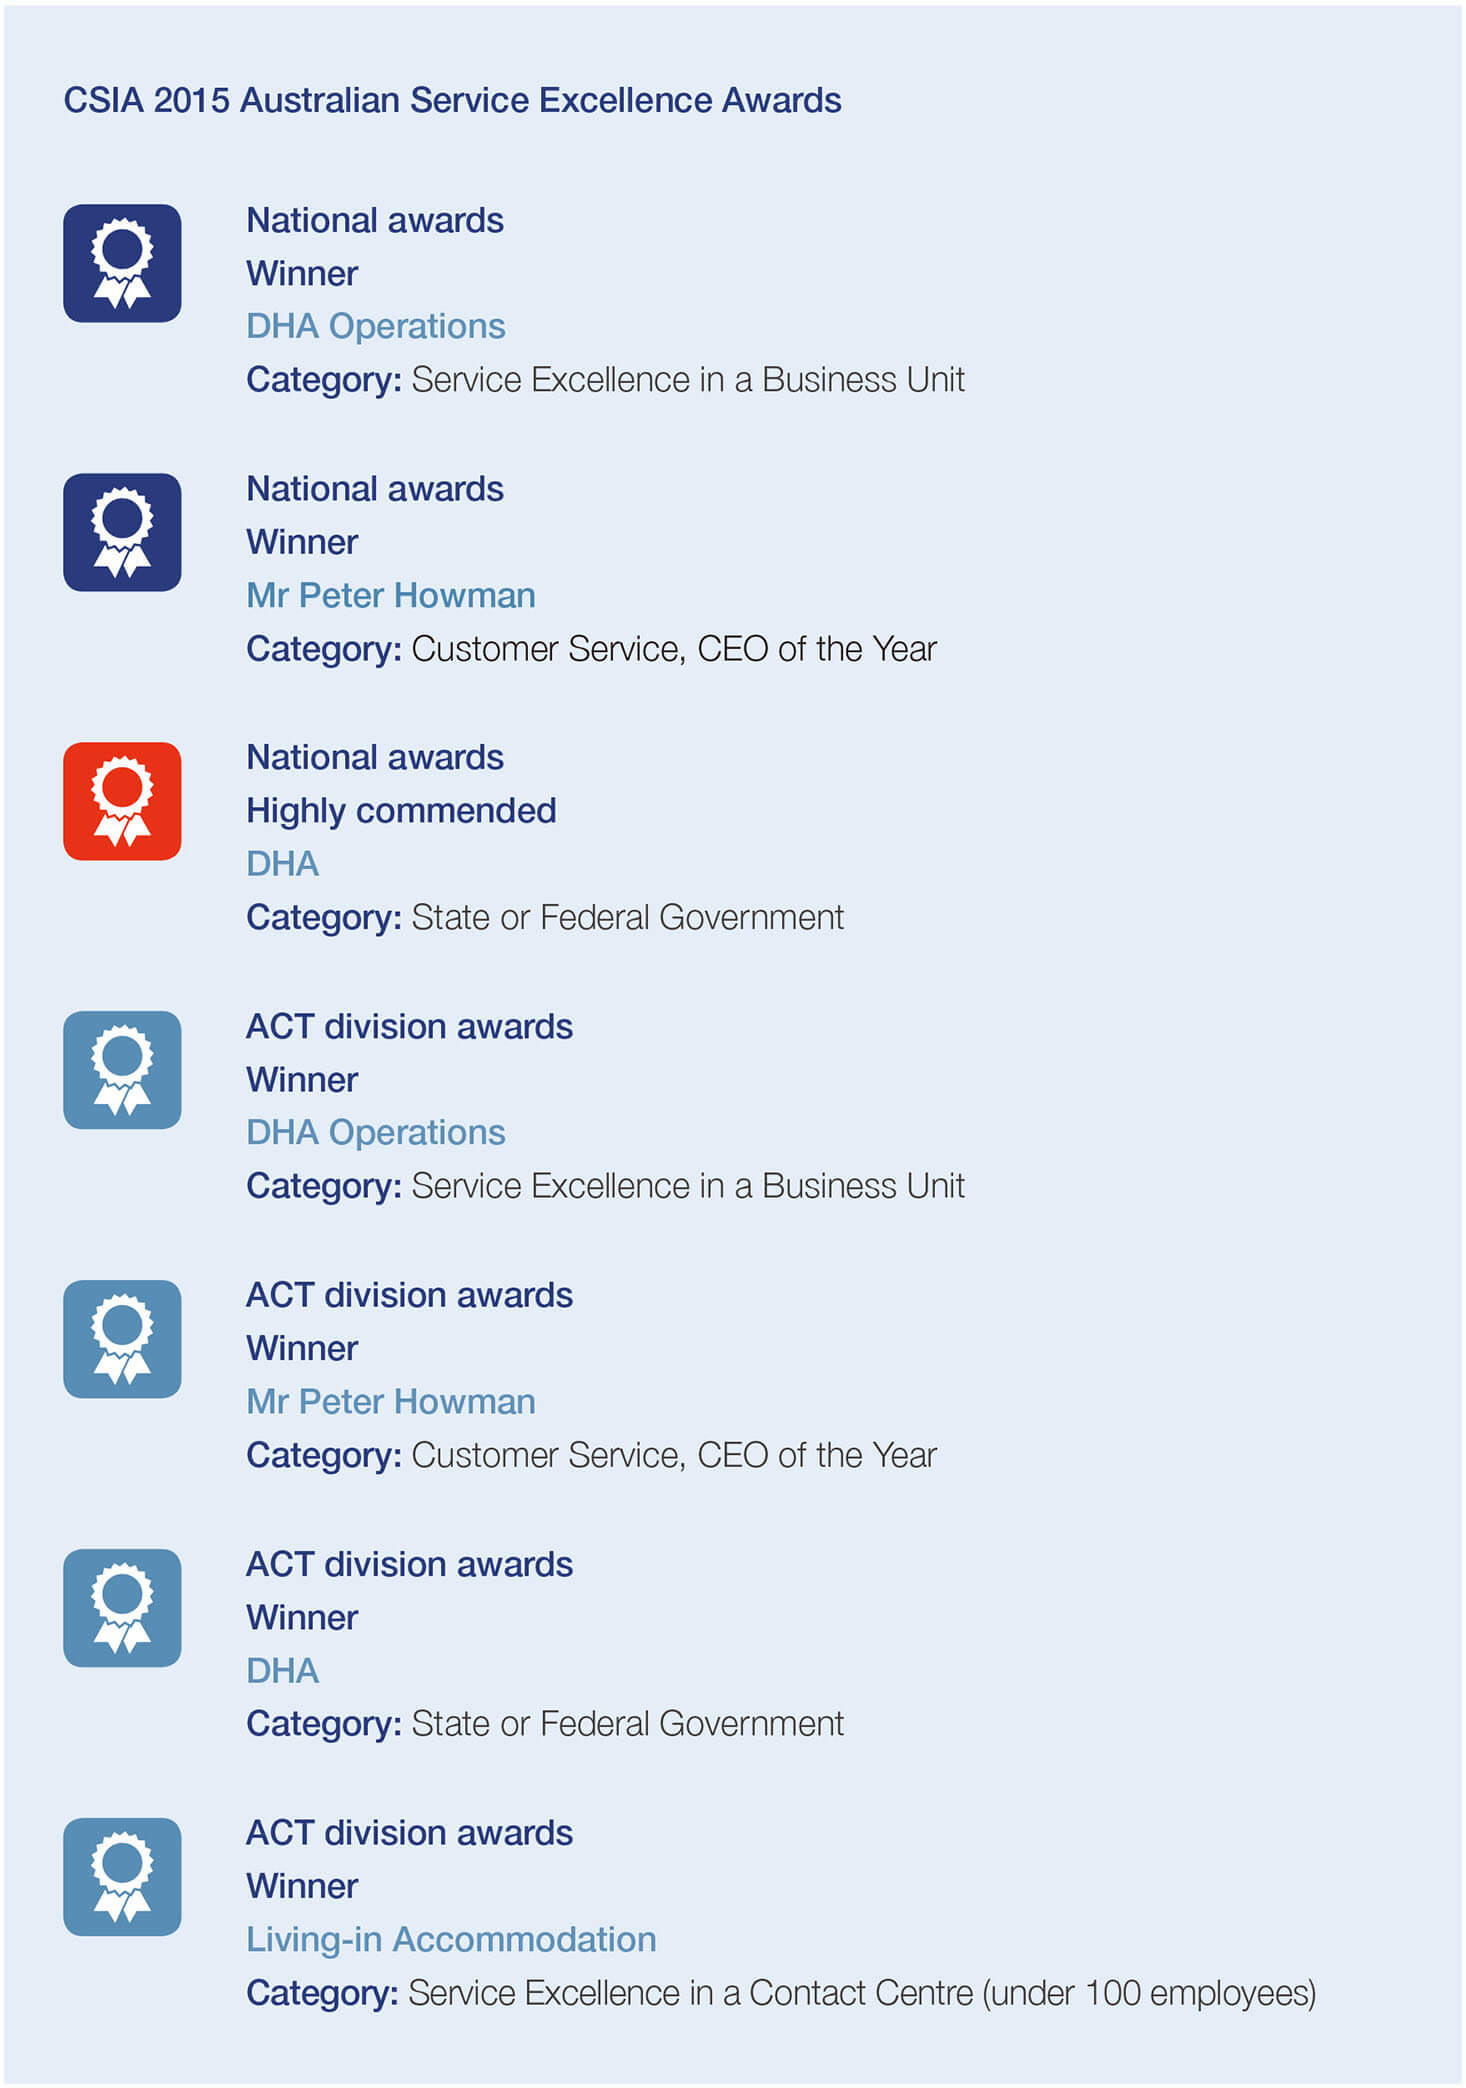 CSIA 2015 Australian Service Excellence Awards